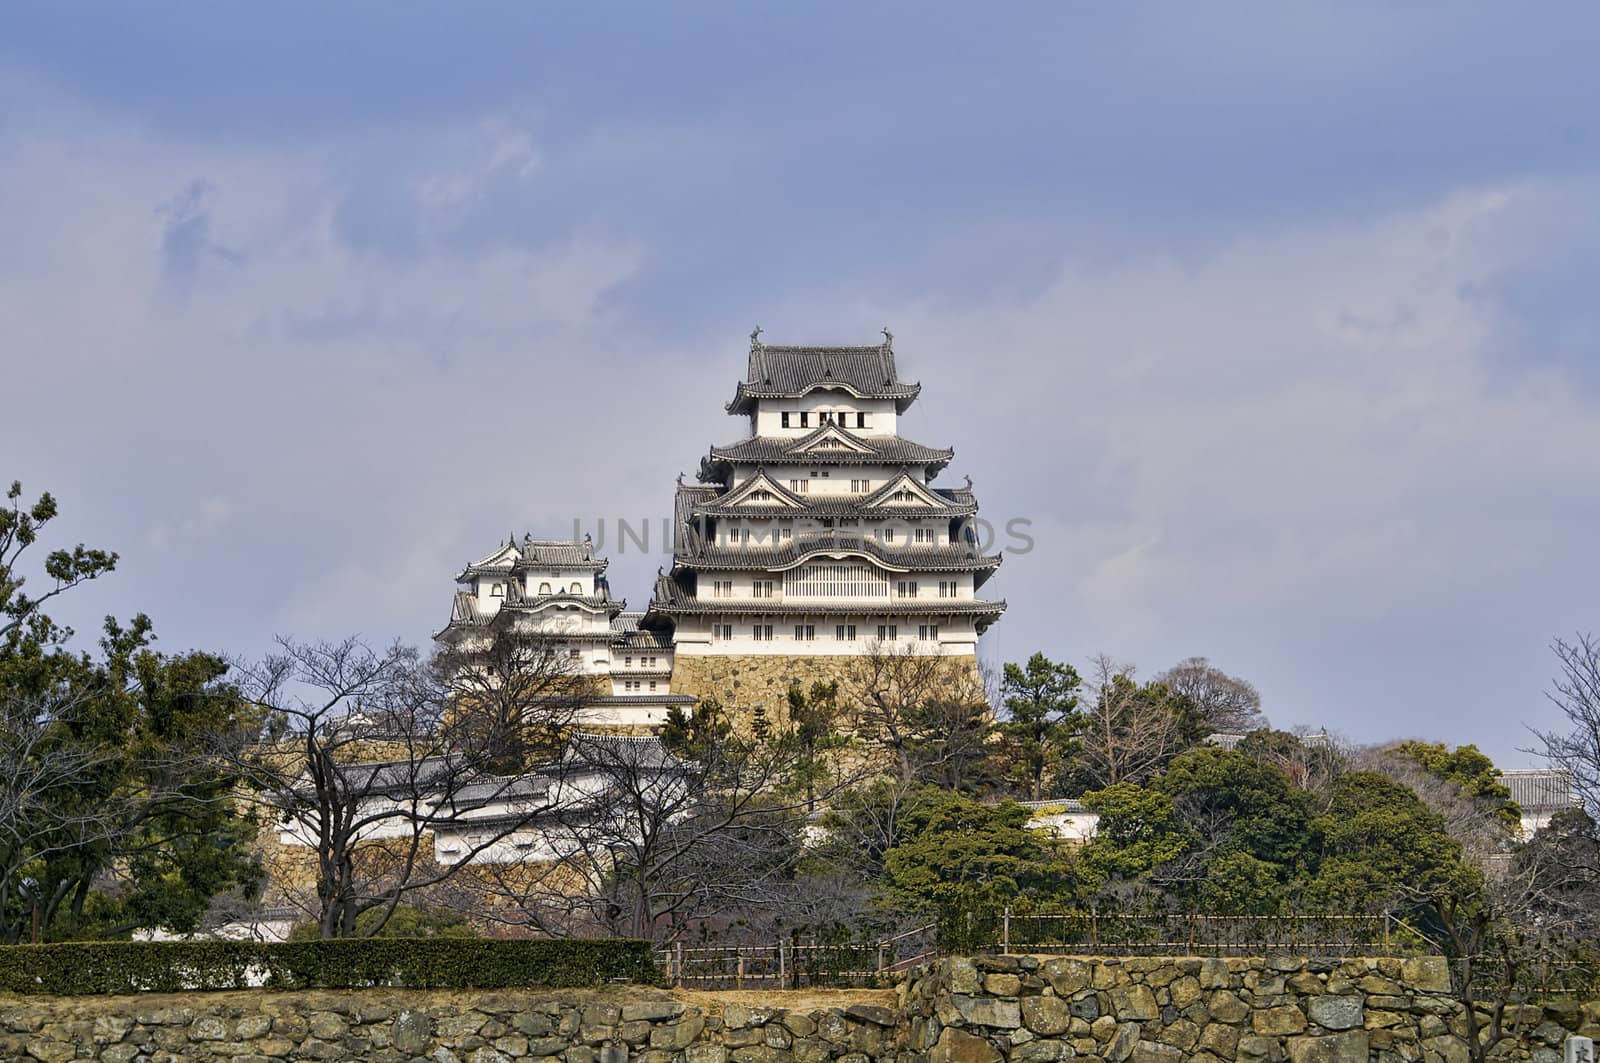 Majestic Castle of Himeji in Japan. by diro